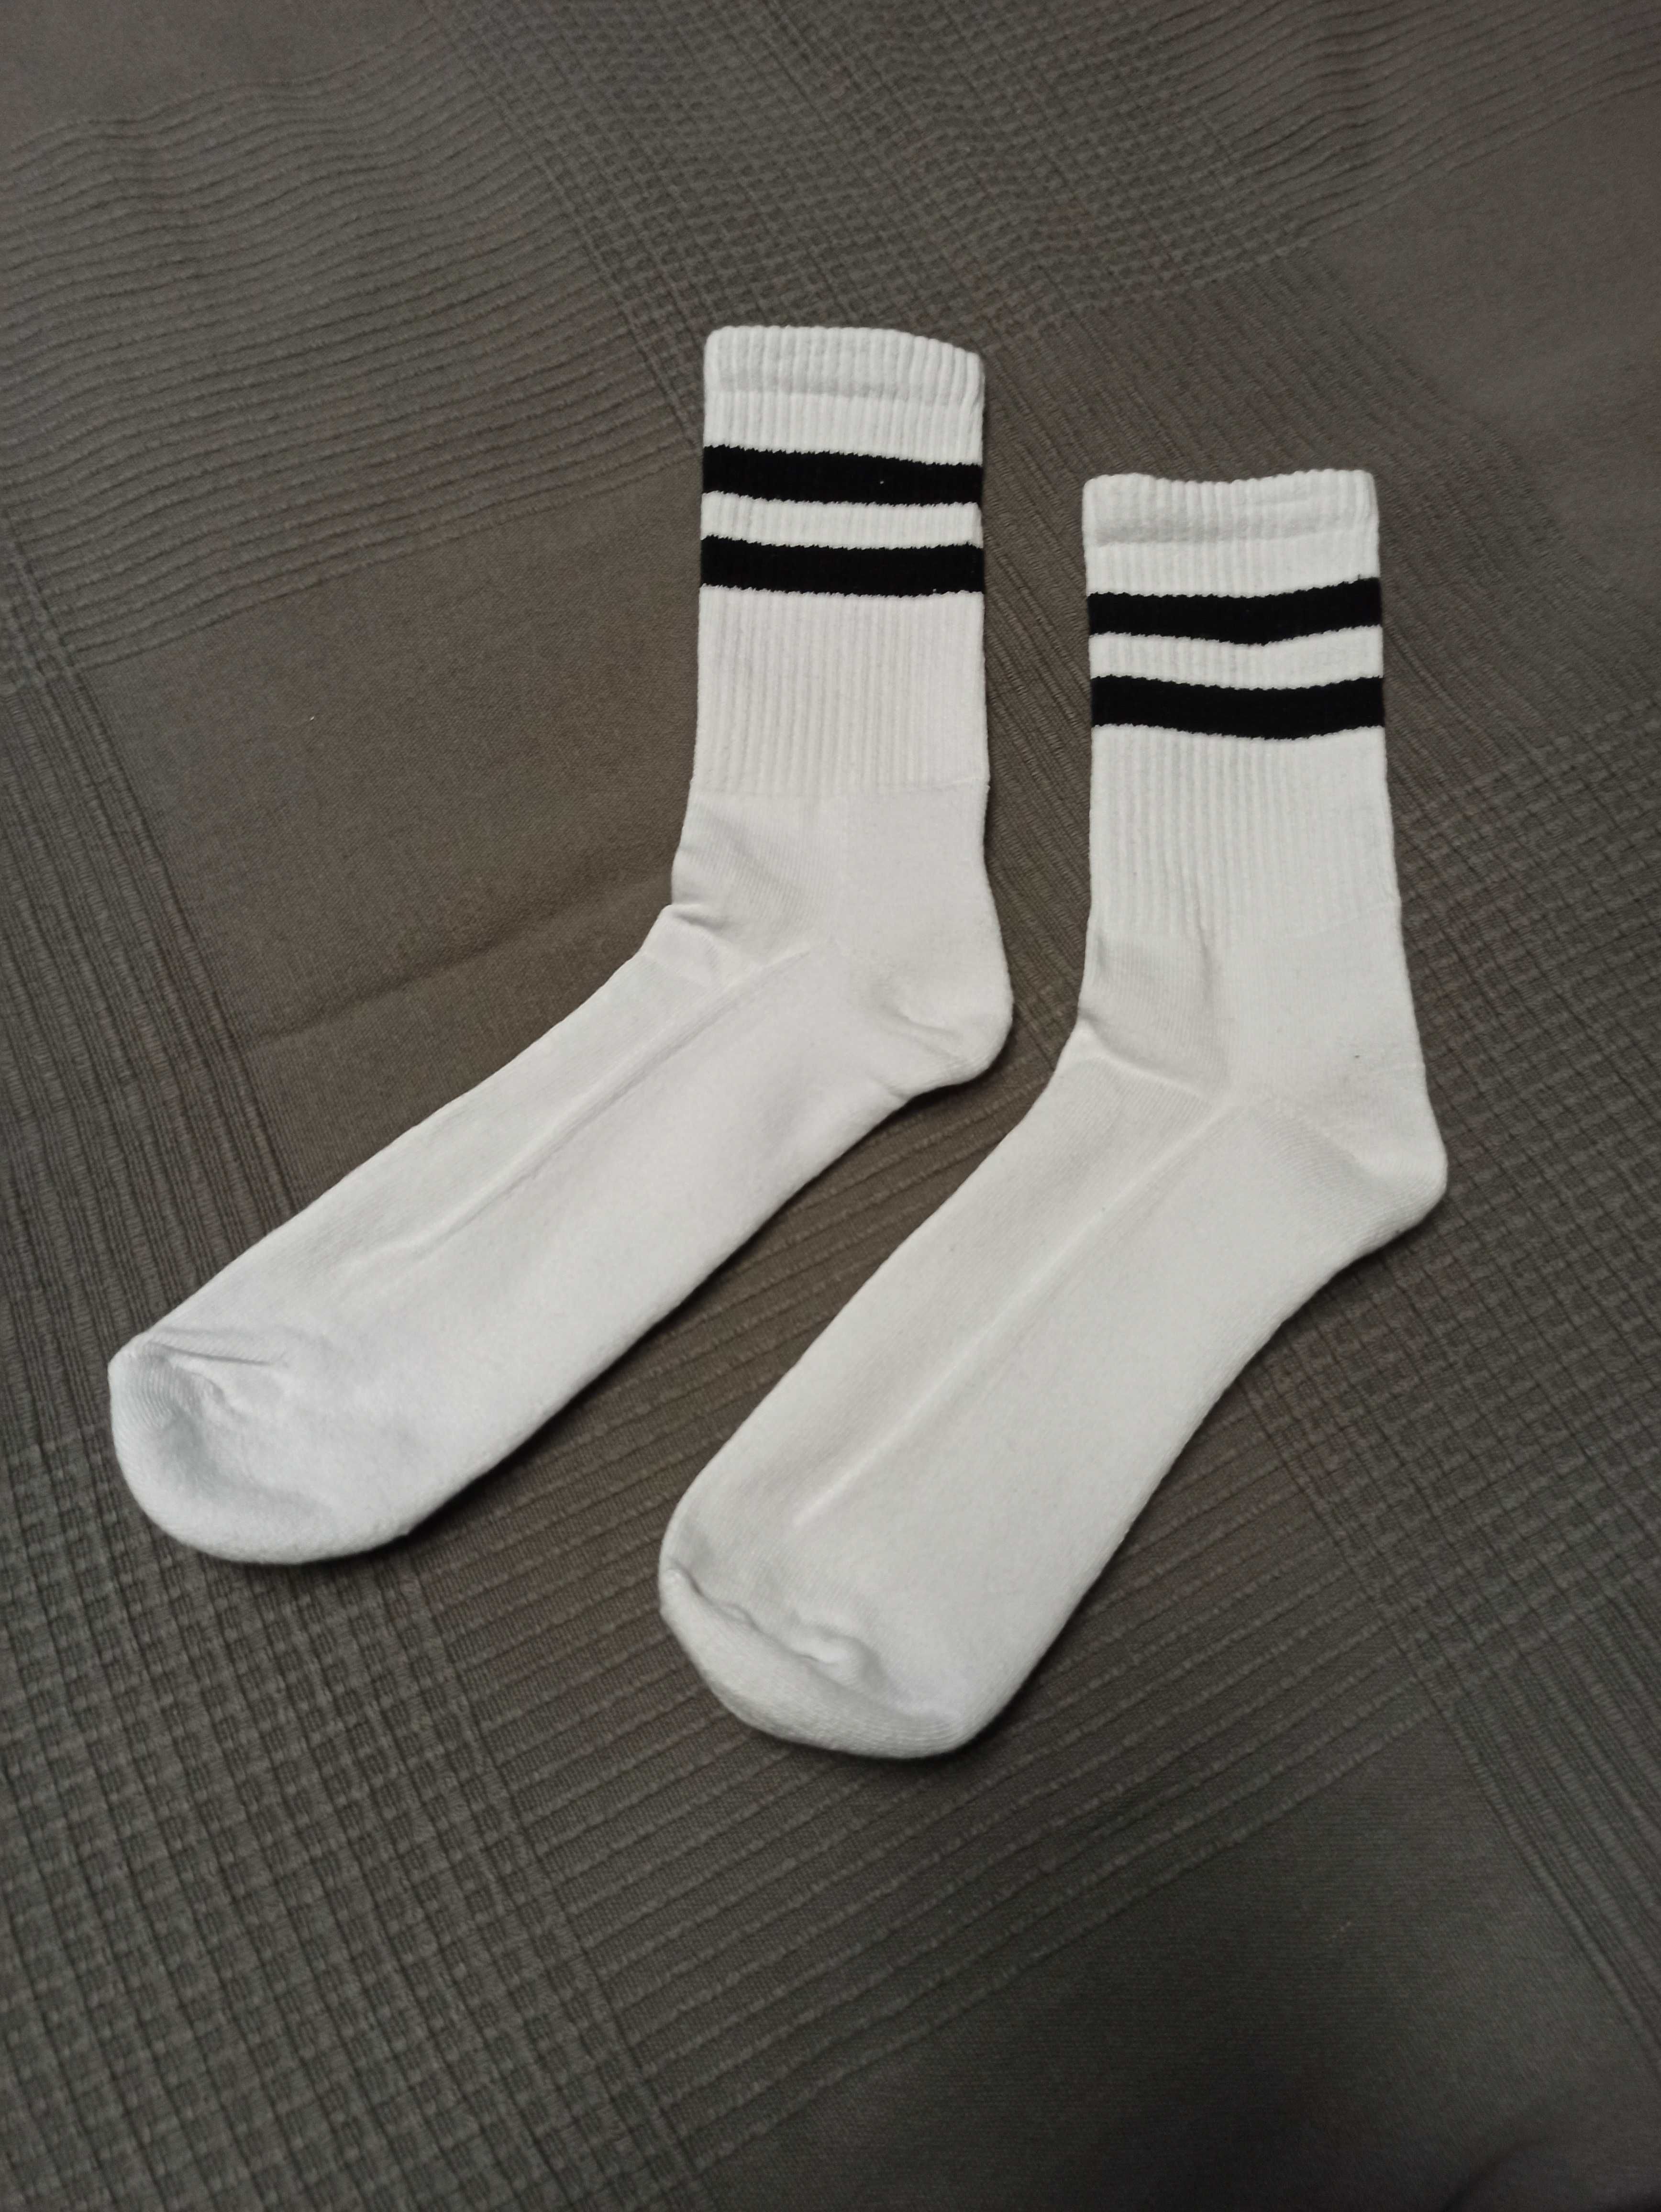 White socks białe skarpety męskie rozm 41-45 One Size socksy sport sox